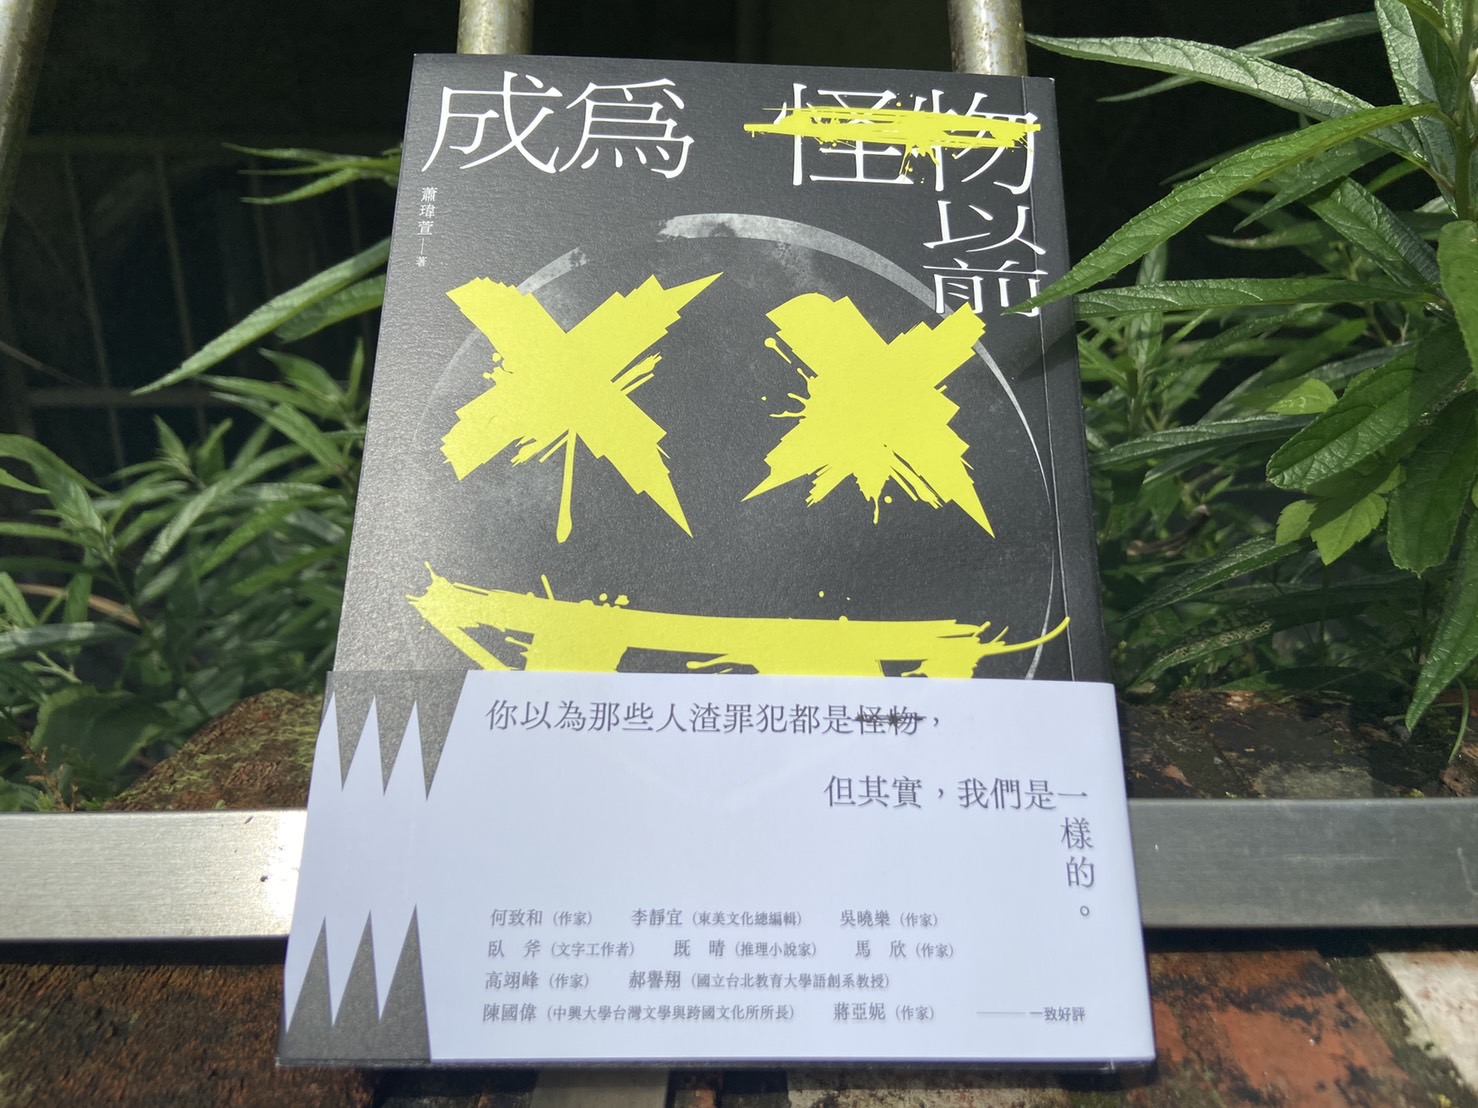 聊聊新作家蕭瑋萱的長篇小說《成為怪物以前》